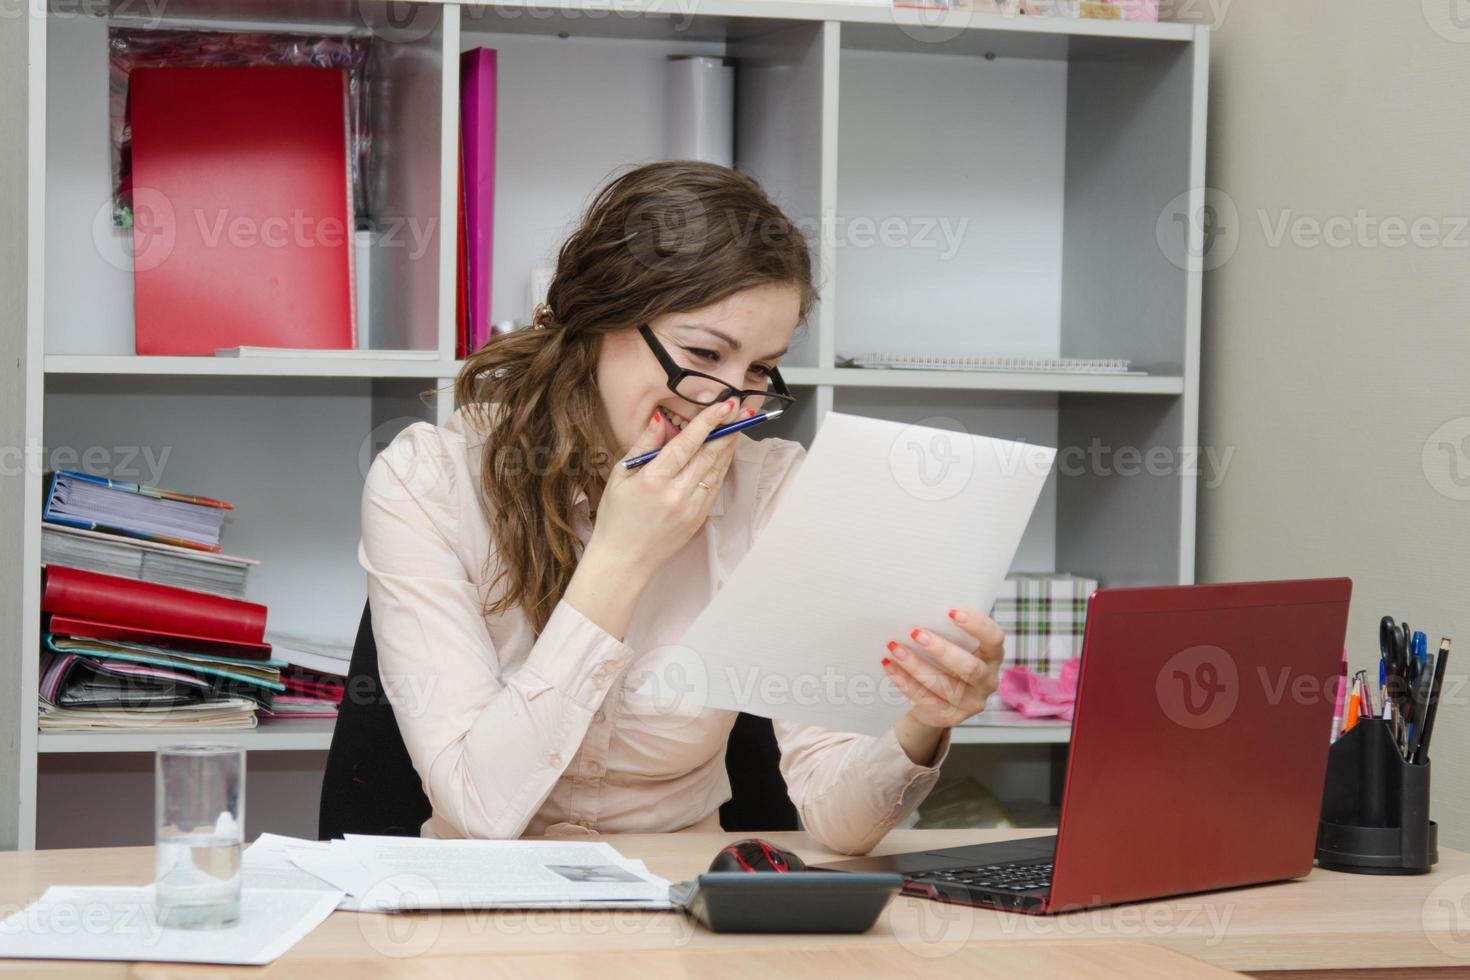 la ragazza ride mentre legge un documento sul posto di lavoro foto